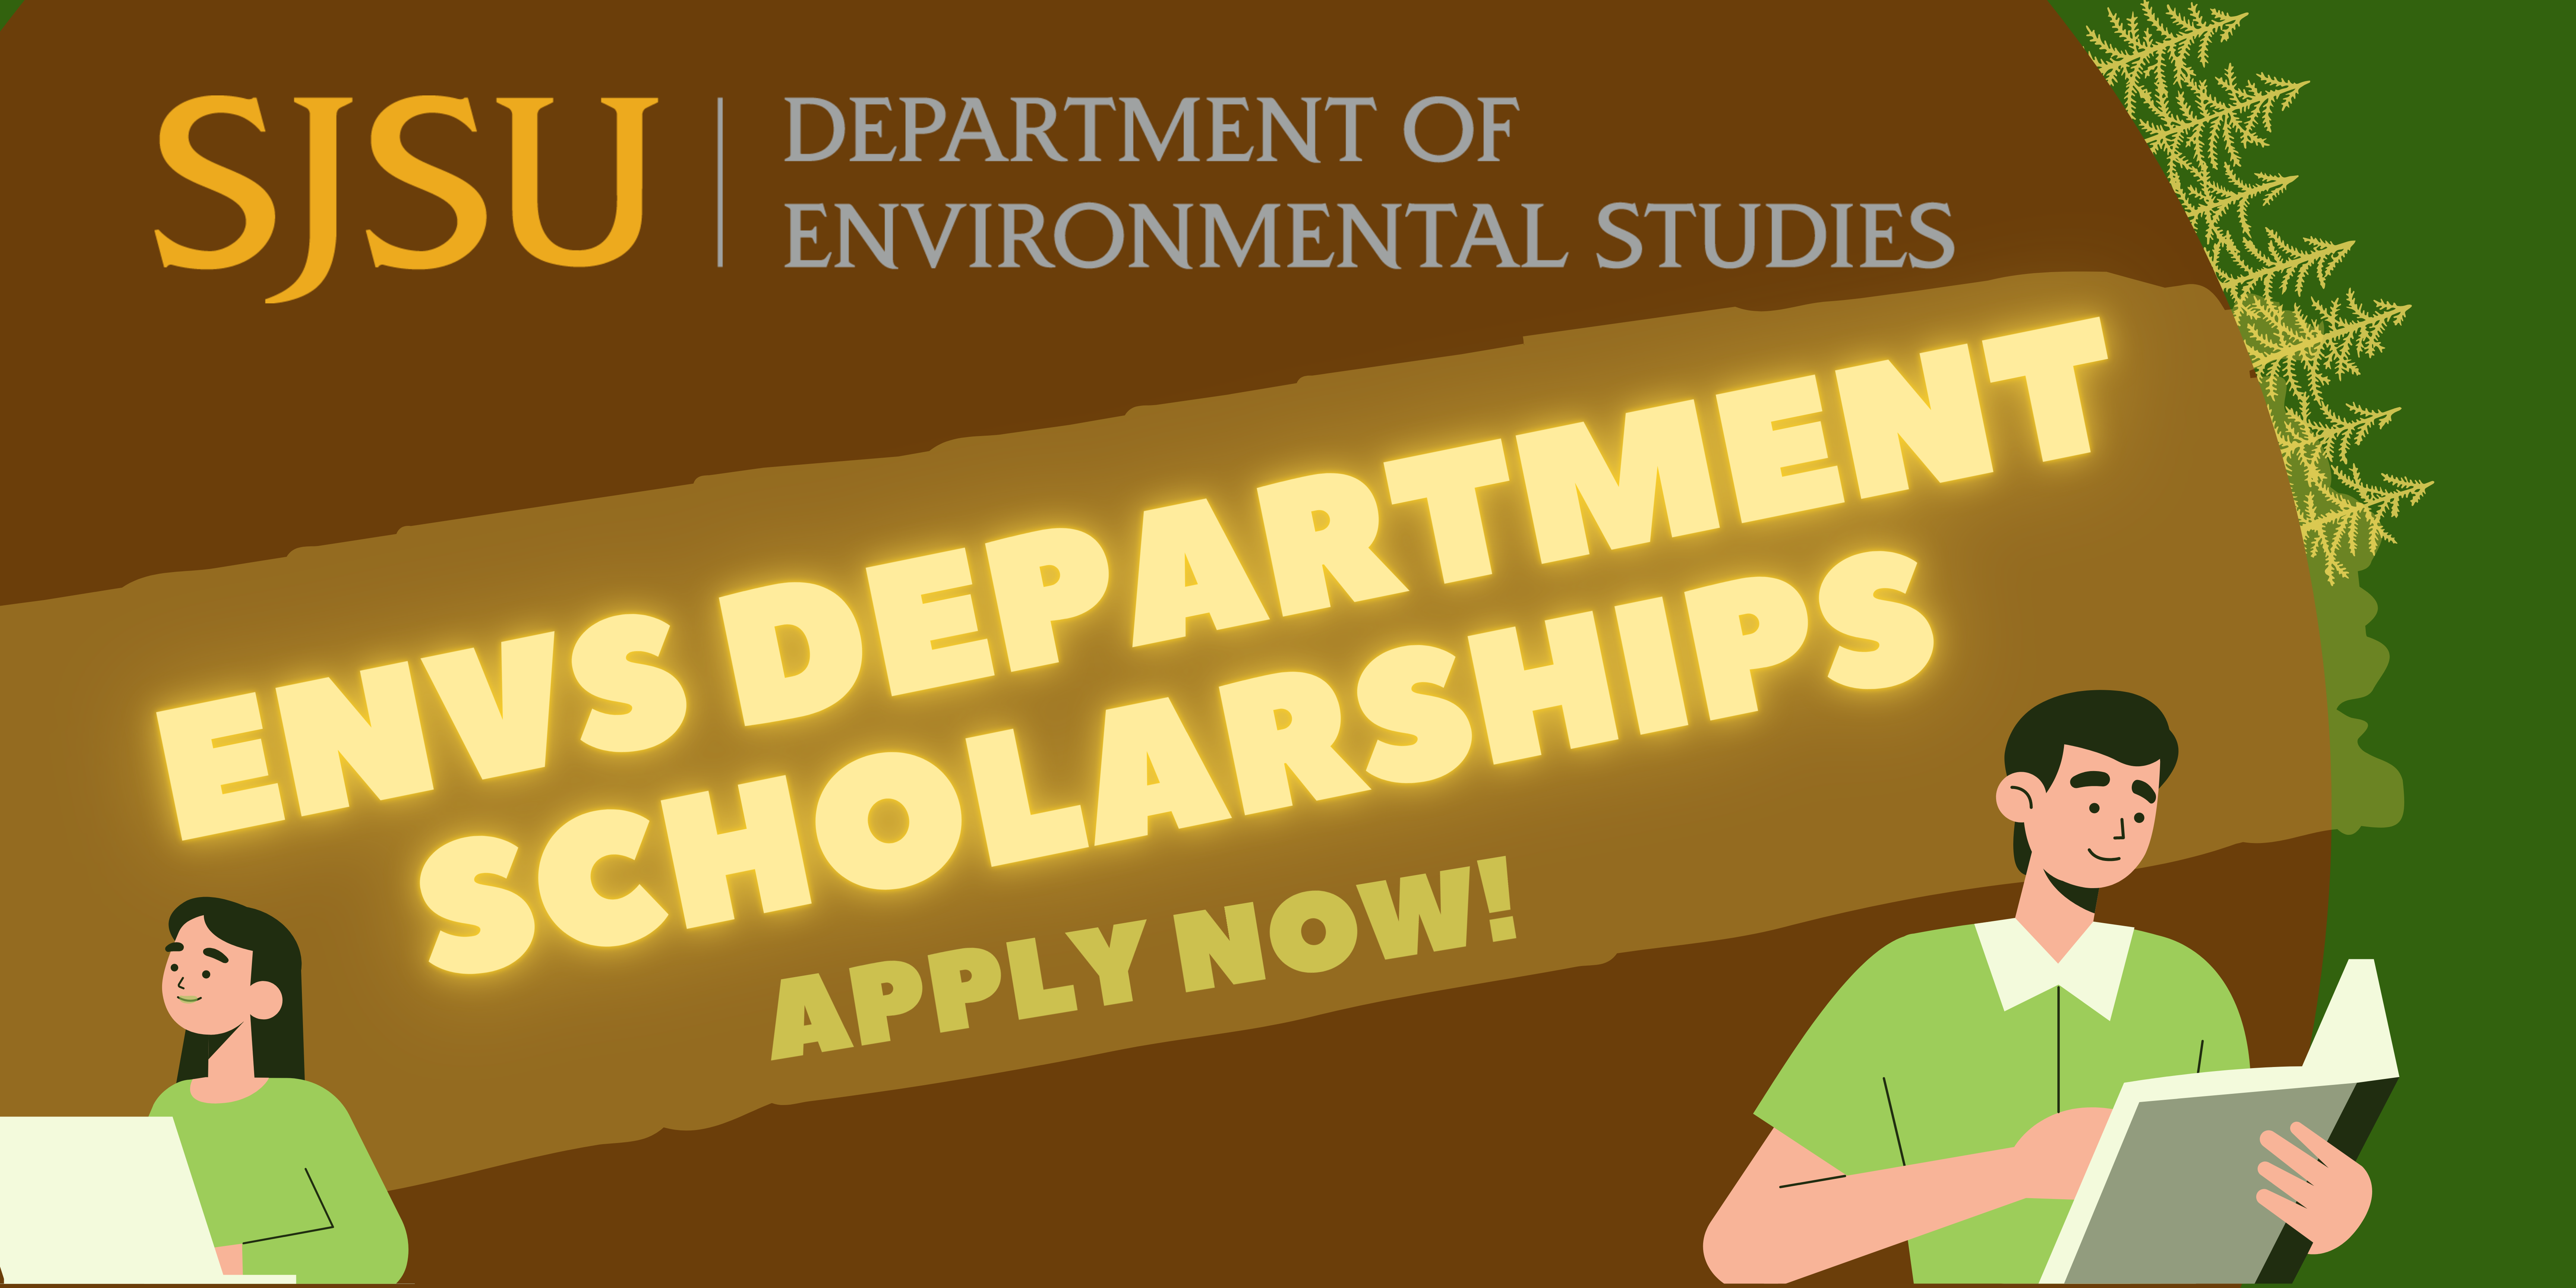 envs department scholarship!